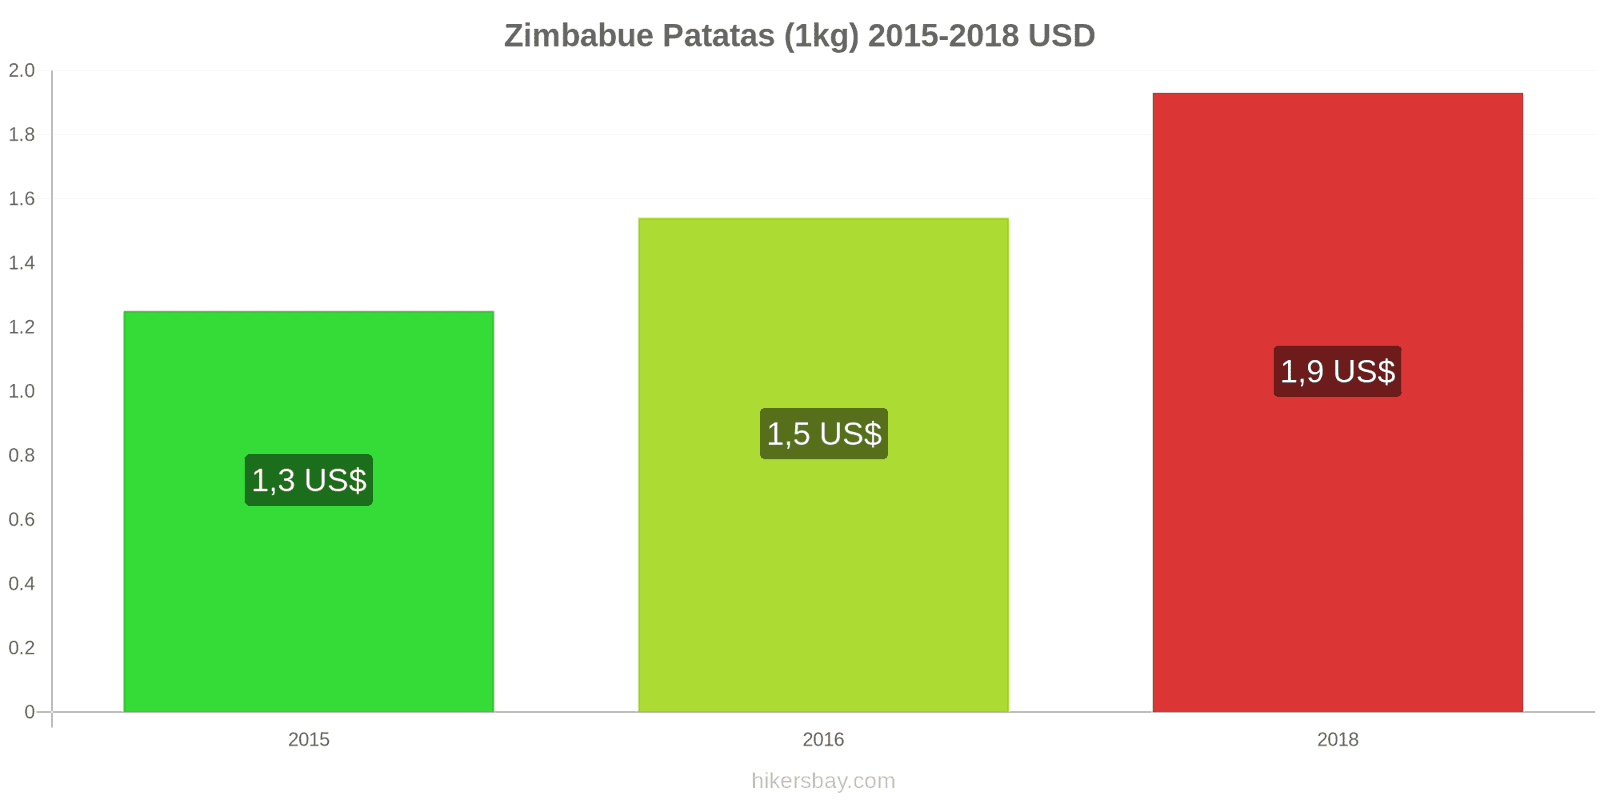 Zimbabue cambios de precios Patatas (1kg) hikersbay.com